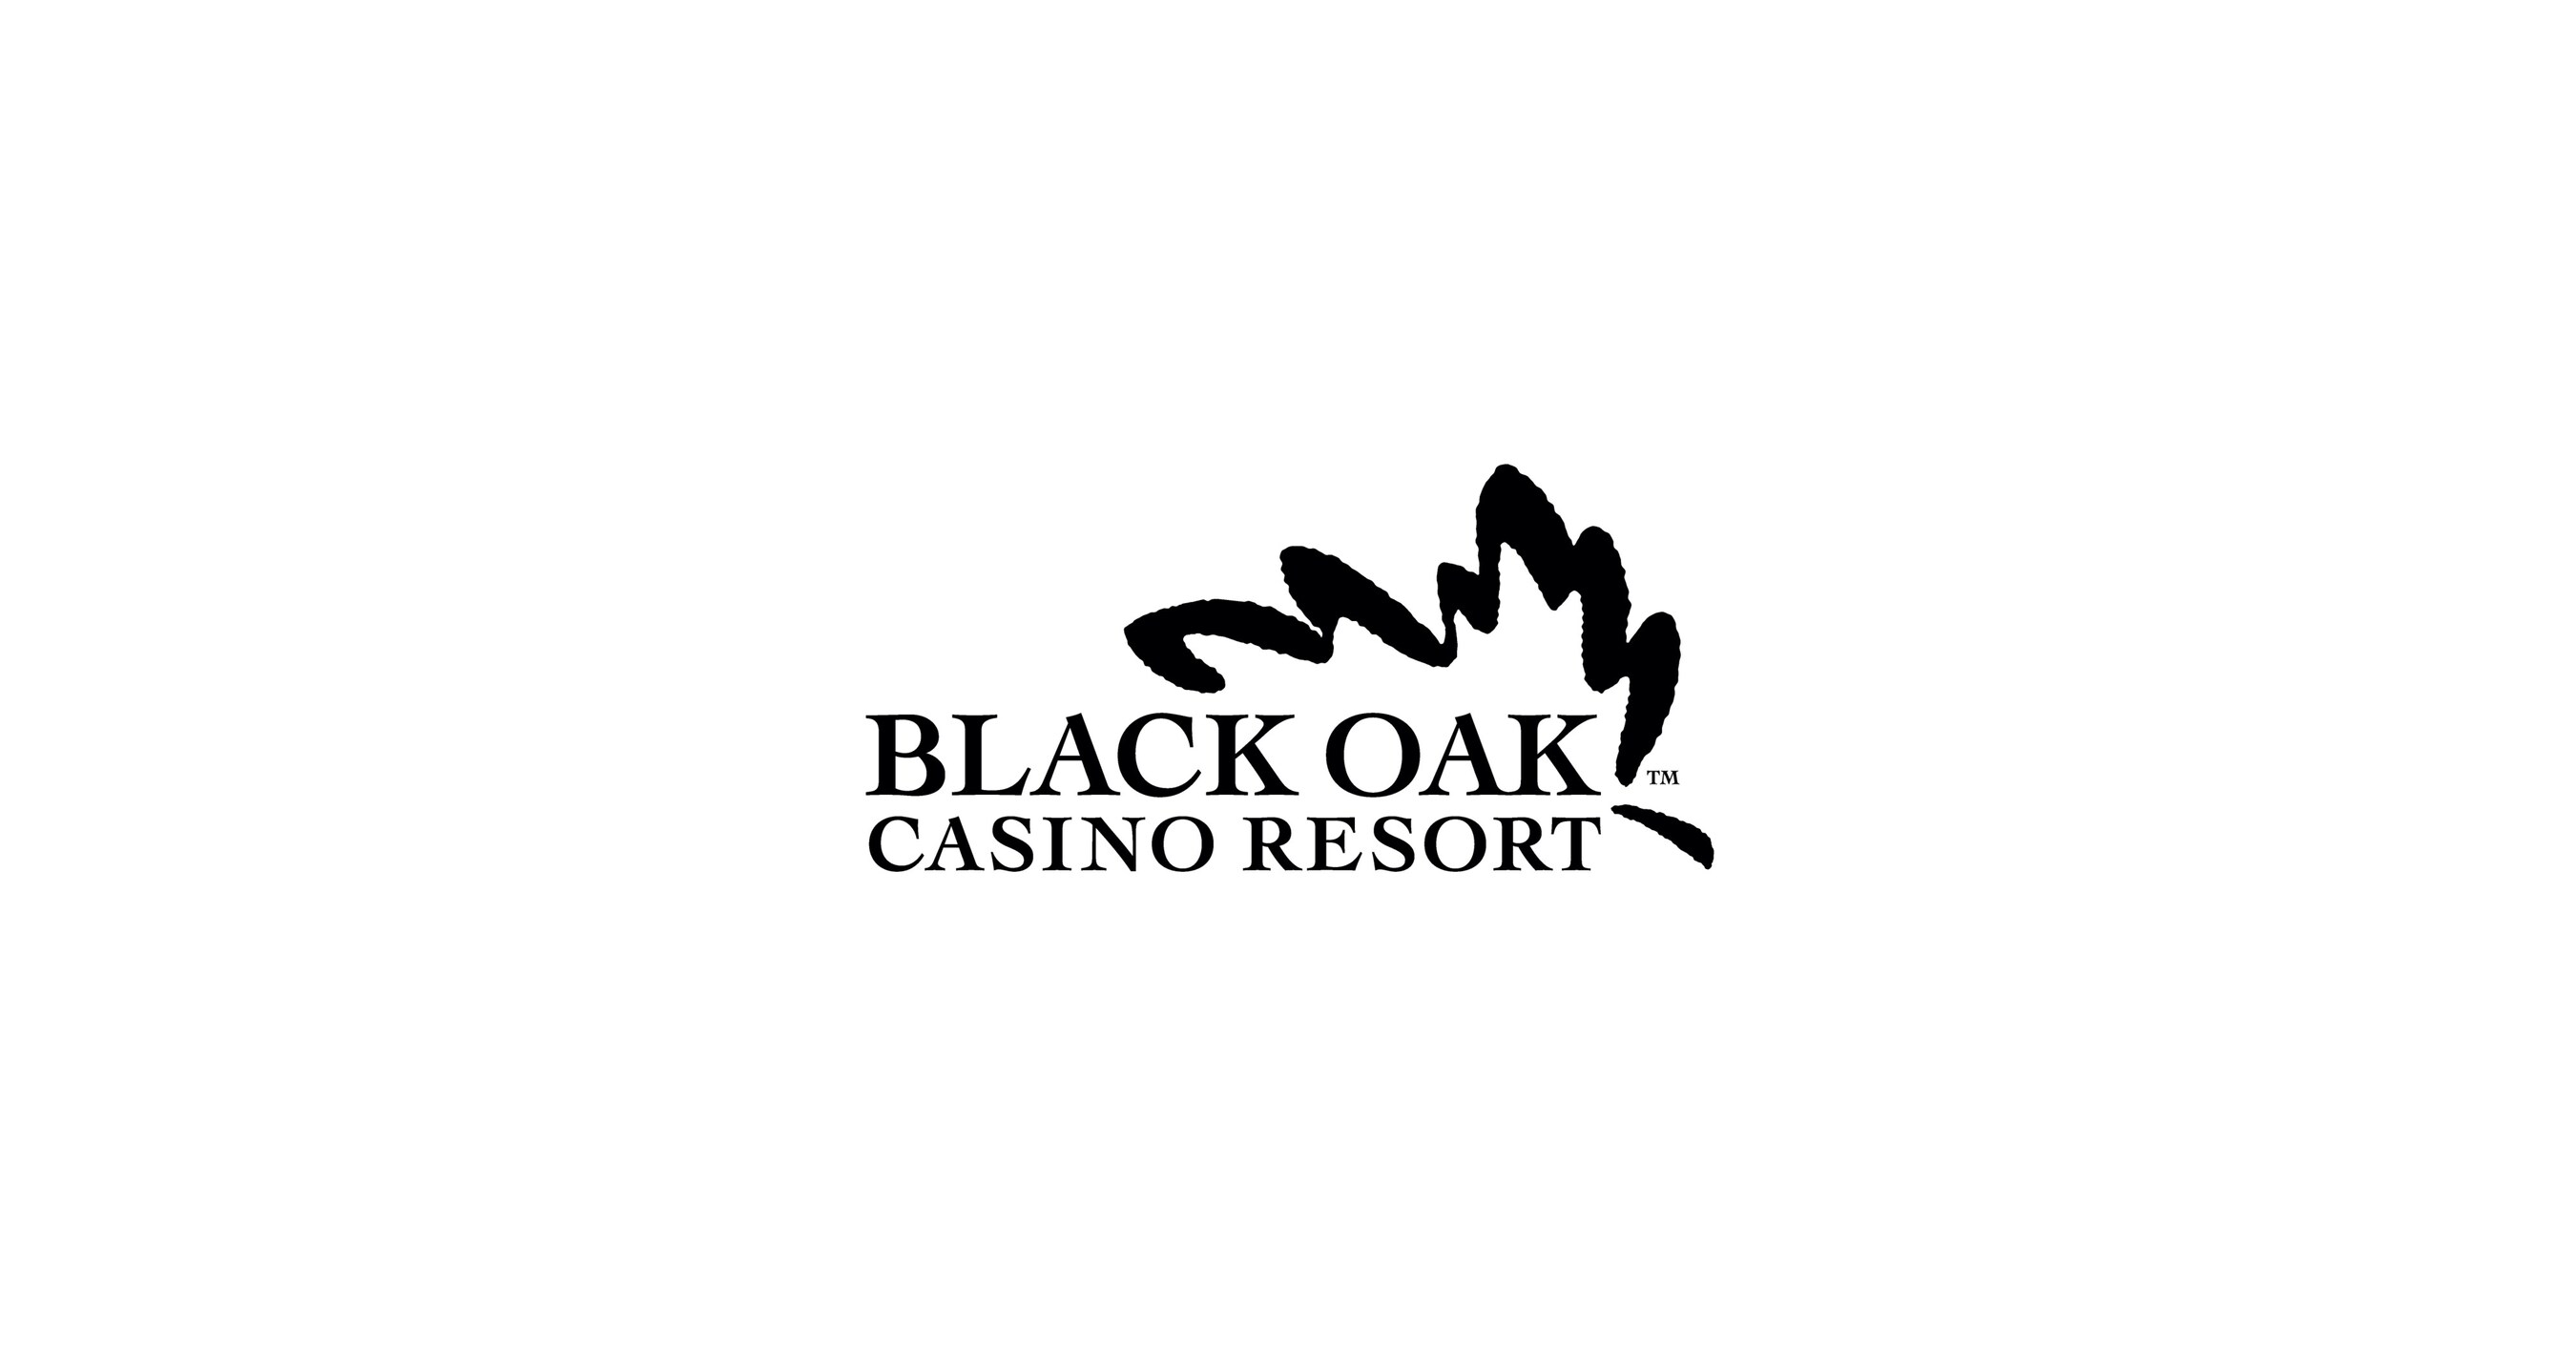 Black Oak Casino Resort continúa su compromiso con el entreteniminento para la family mediante asoci